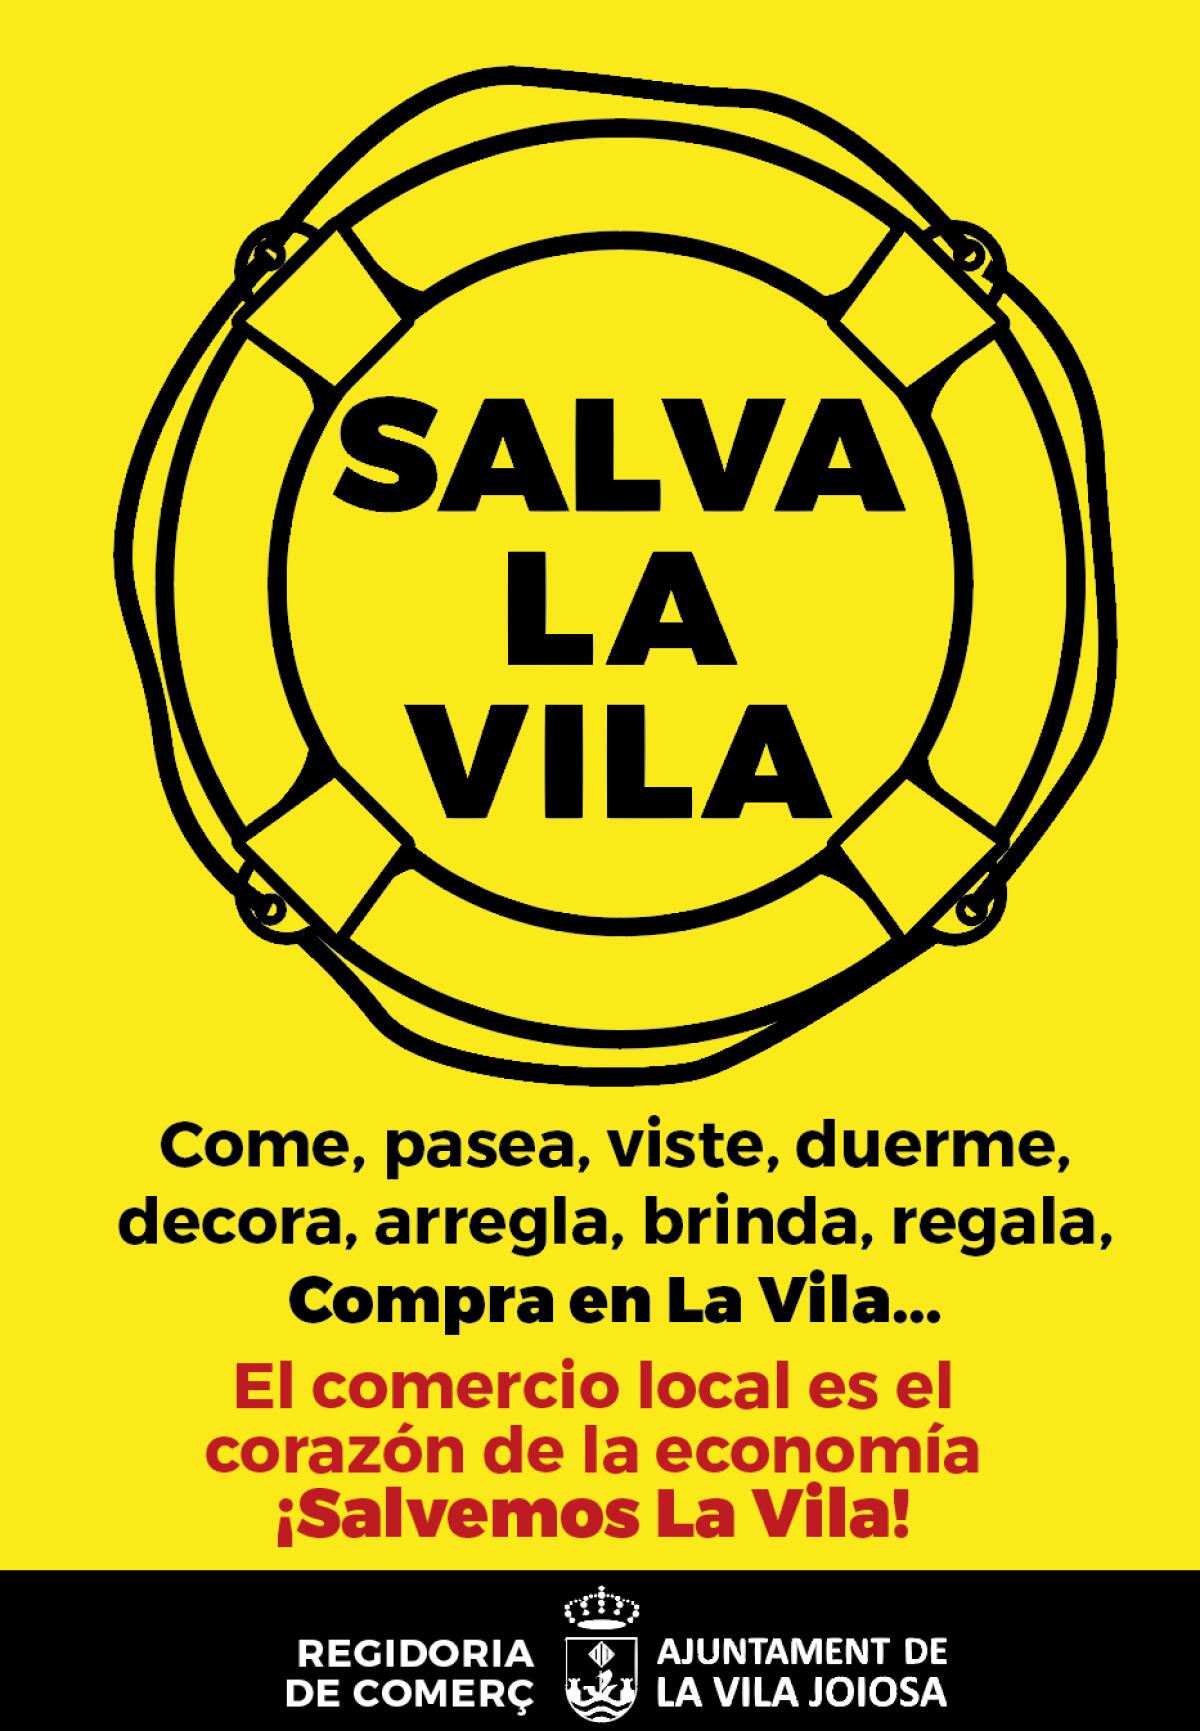 La concejalía de Comercio de la Vila Joiosa lanza una campaña de promoción del comercio local.